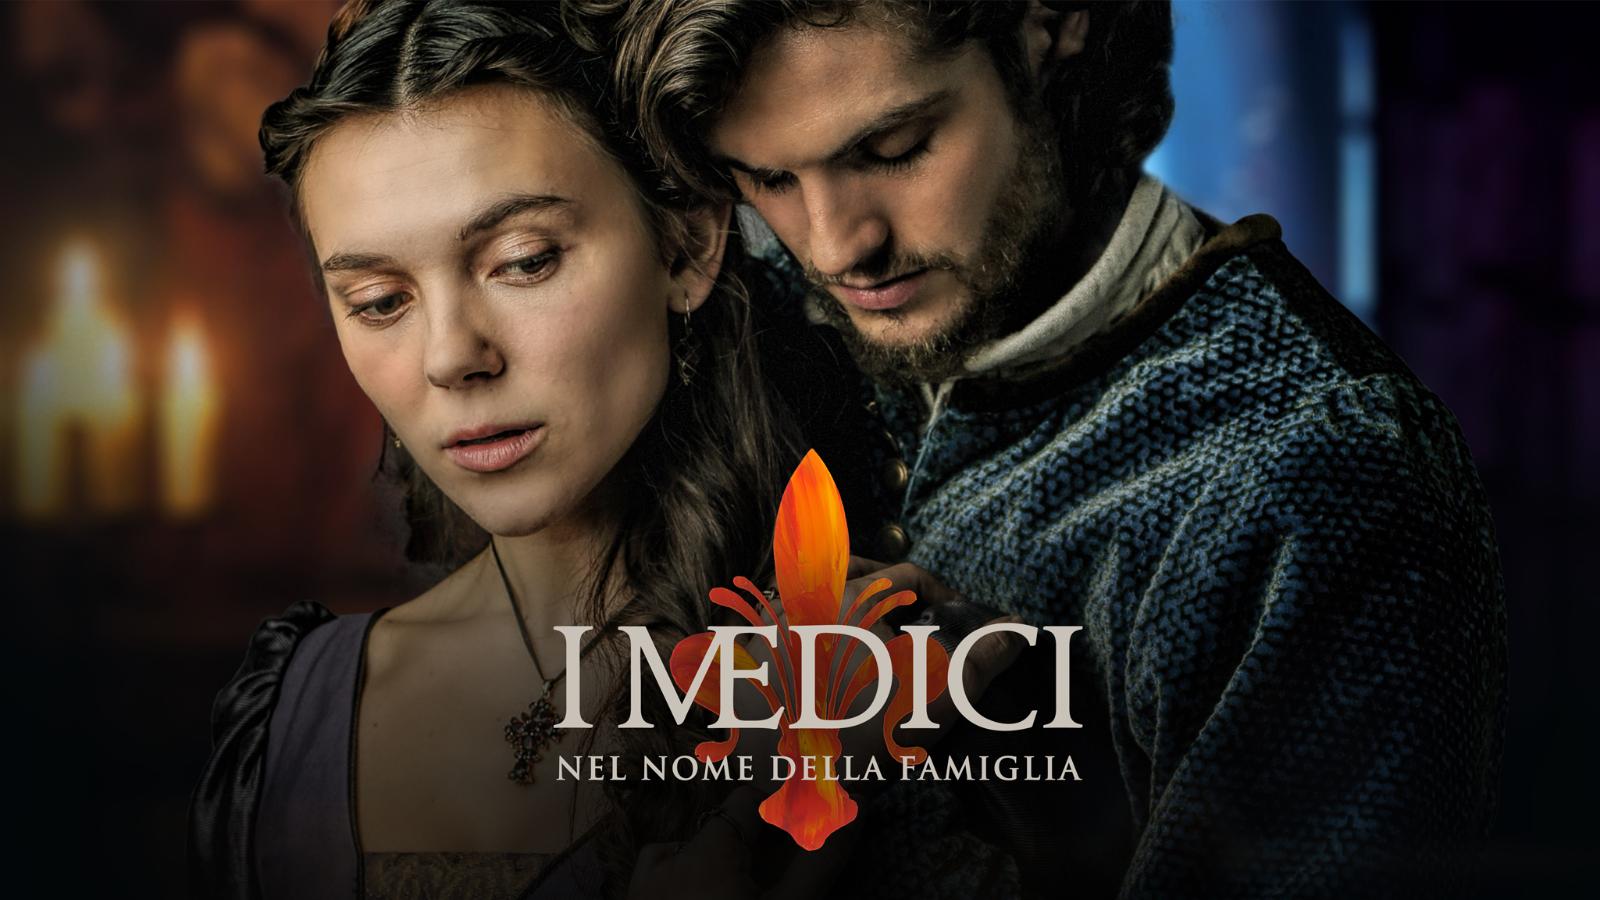 I Medici - Nel nome della famiglia, in Ultra HD Rai 4K al canale 210 tivùsat.